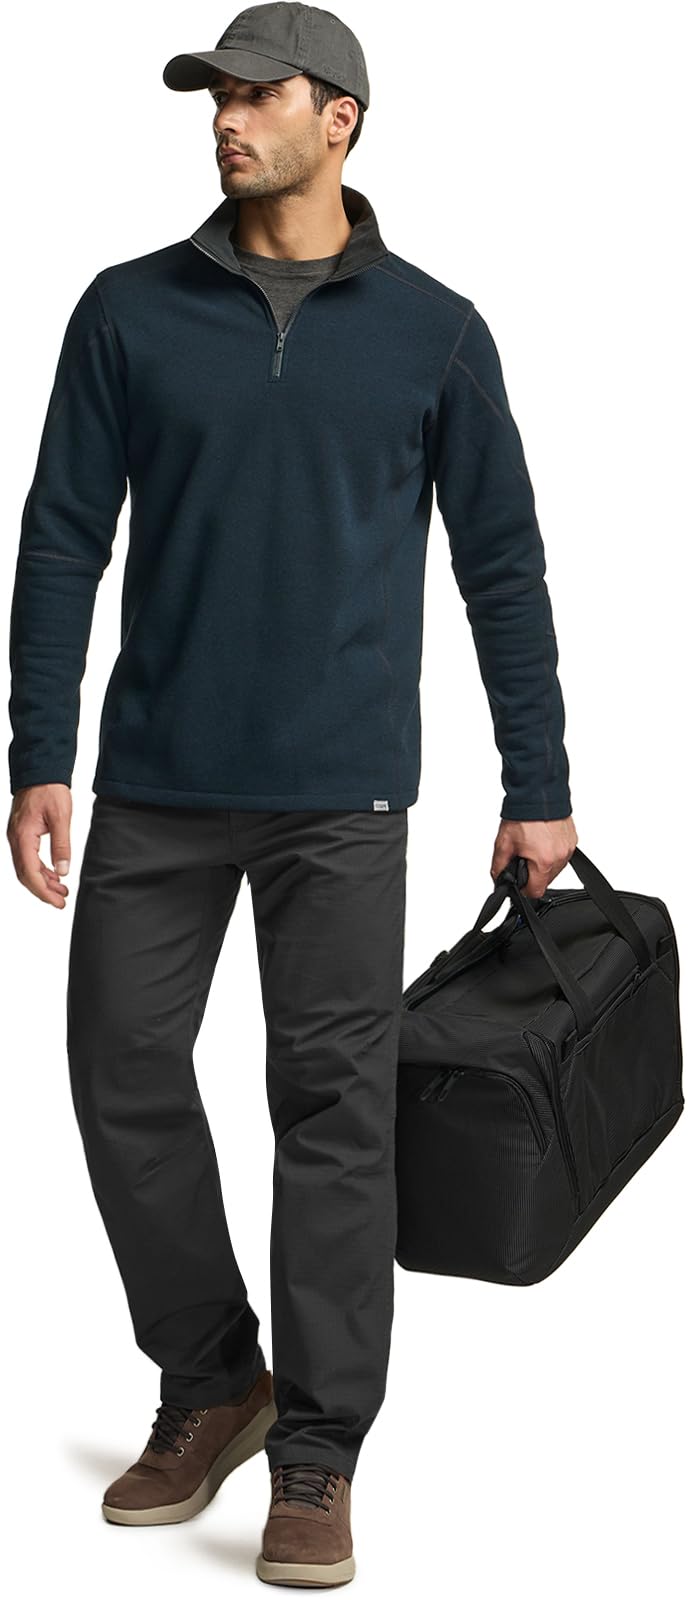 Thermal Fleece Half Zip Pullover Winter Outdoor Warm Sweater Lightweight Long Sleeve Sweatshirt For Men